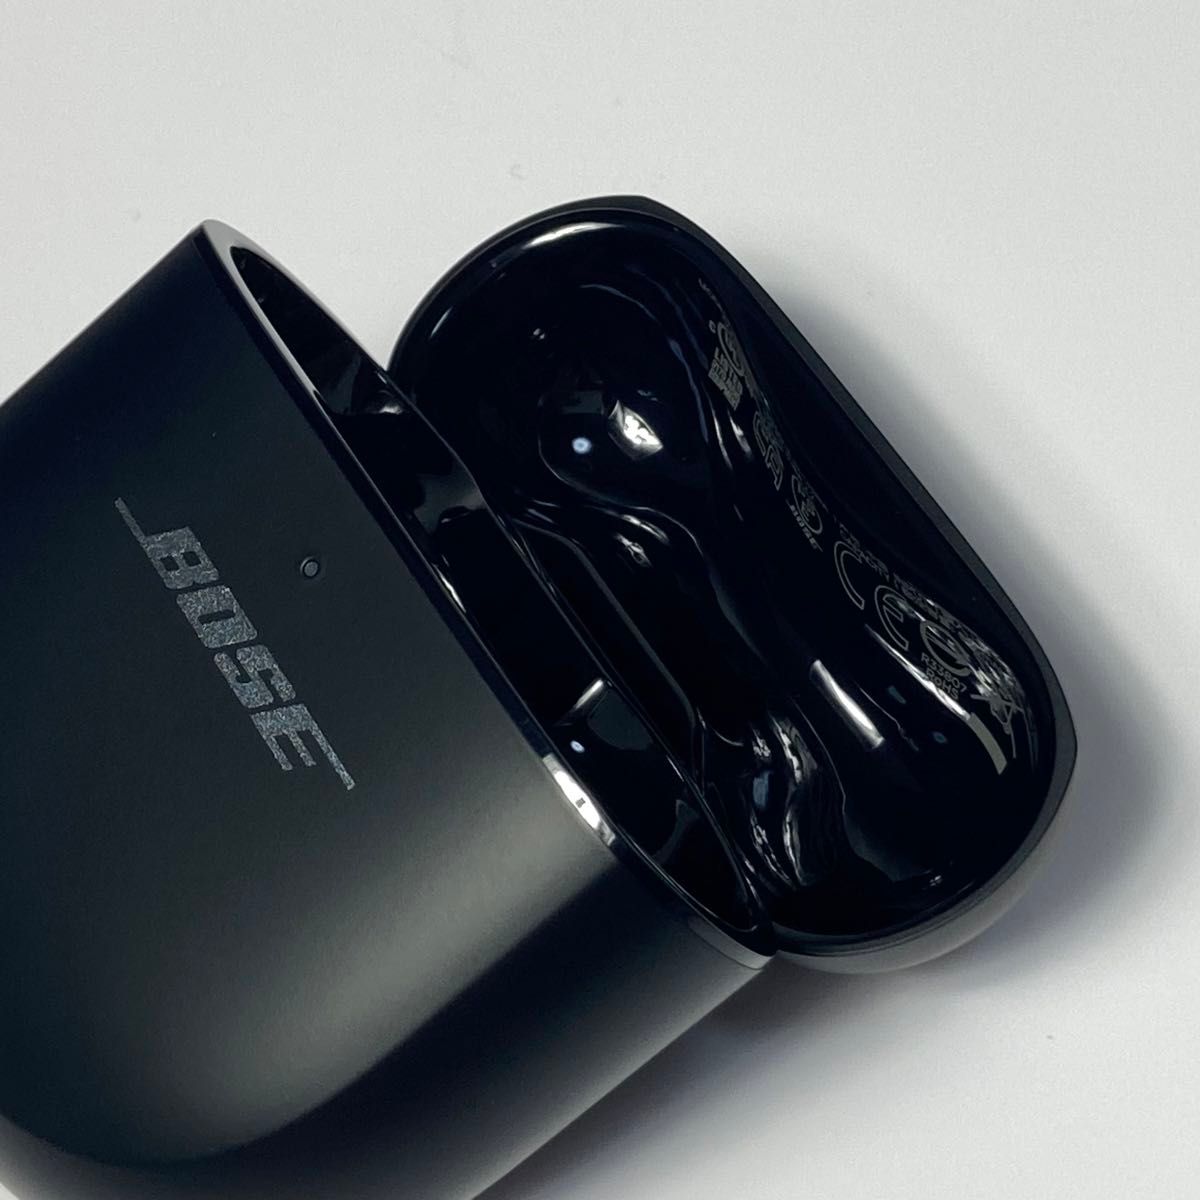 ★返品保証★ Bose QuietComfort Ultra Earbuds 完全ワイヤレス ノイズキャンセリングイヤホン